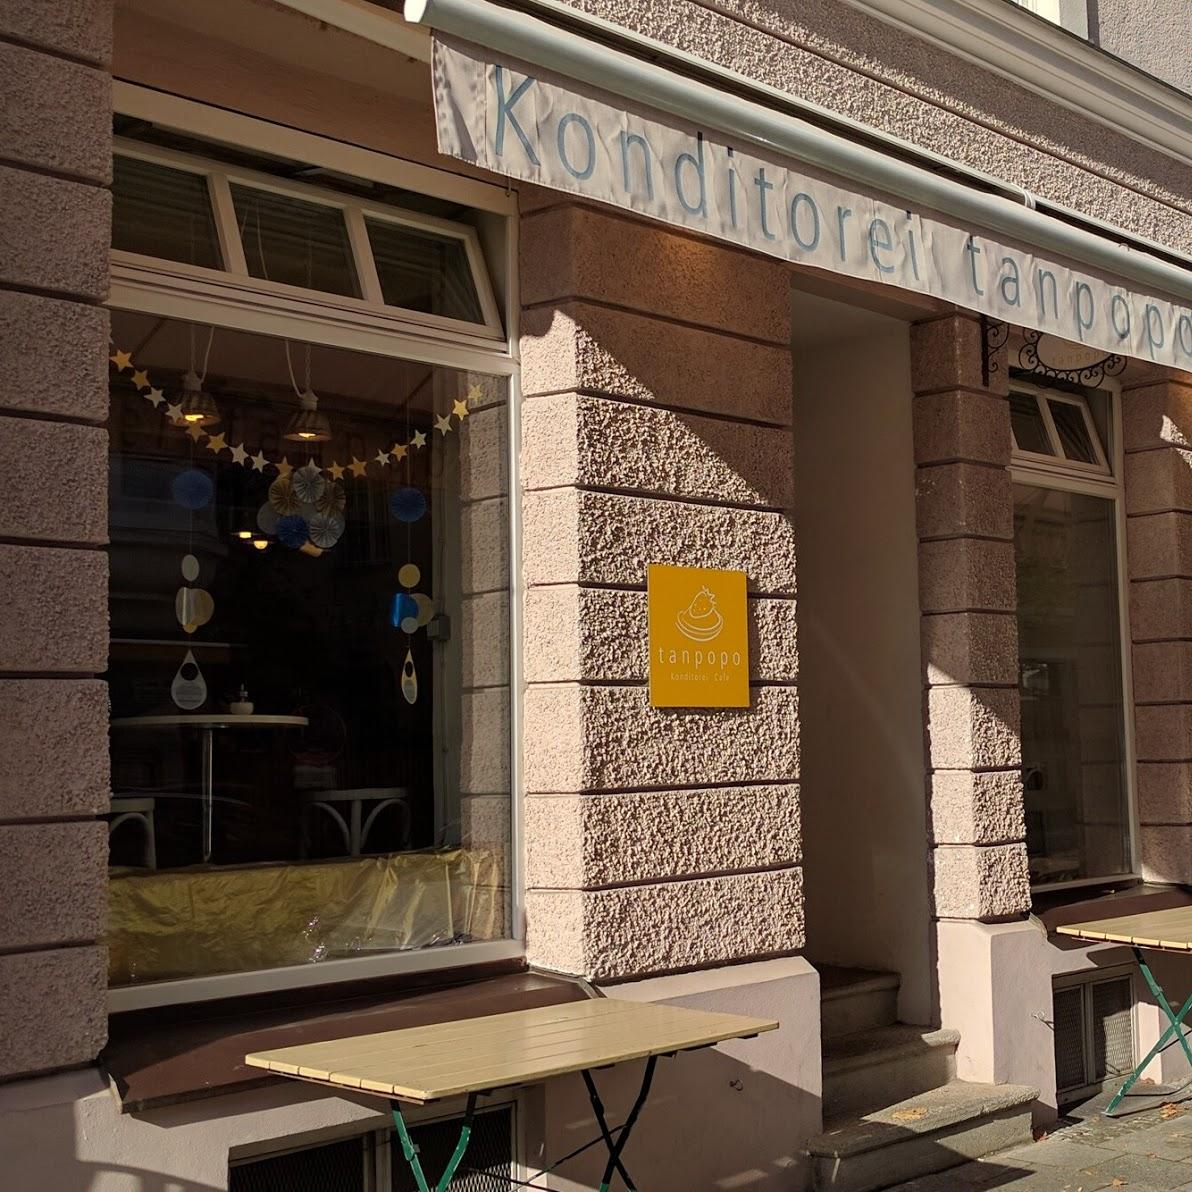 Restaurant "Tanpopo Konditorei Café" in München